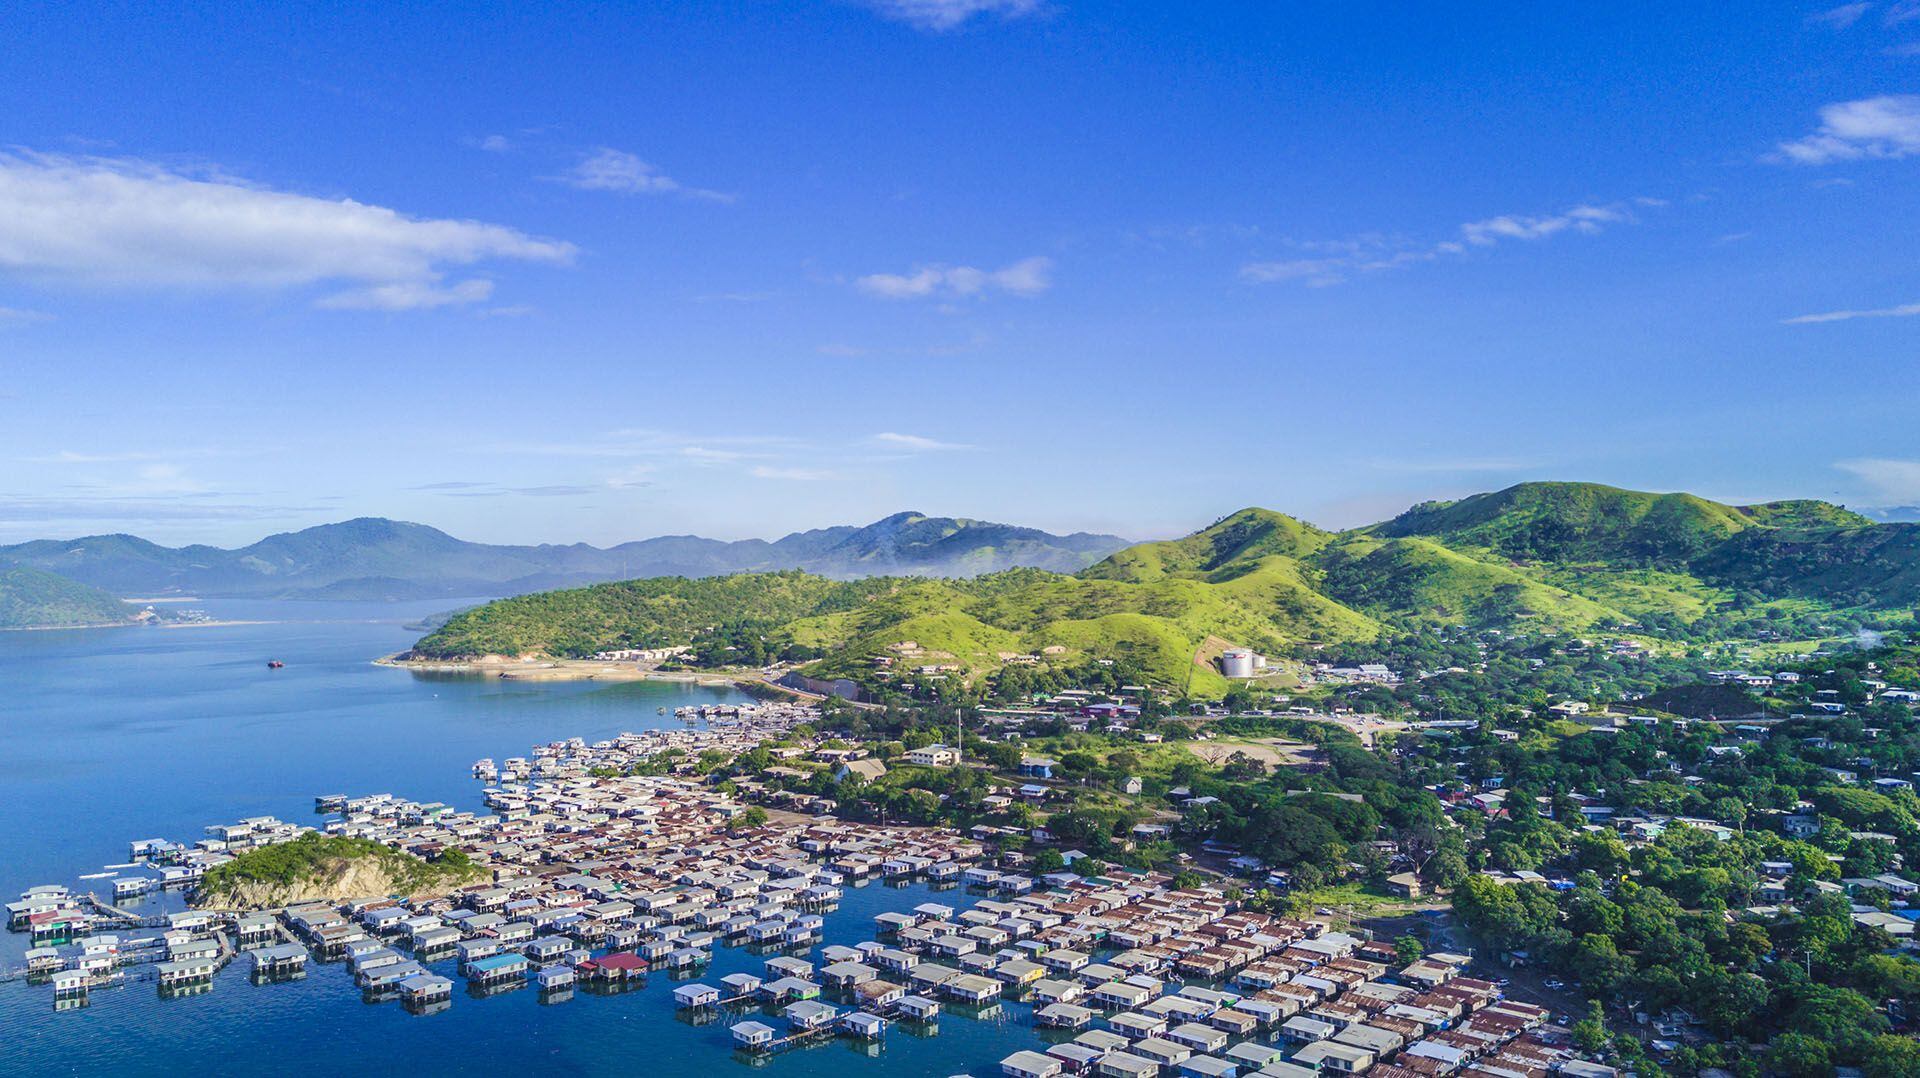 Esta es Nueva Guinea, la segunda isla más grande del mundo (Shutterstock)